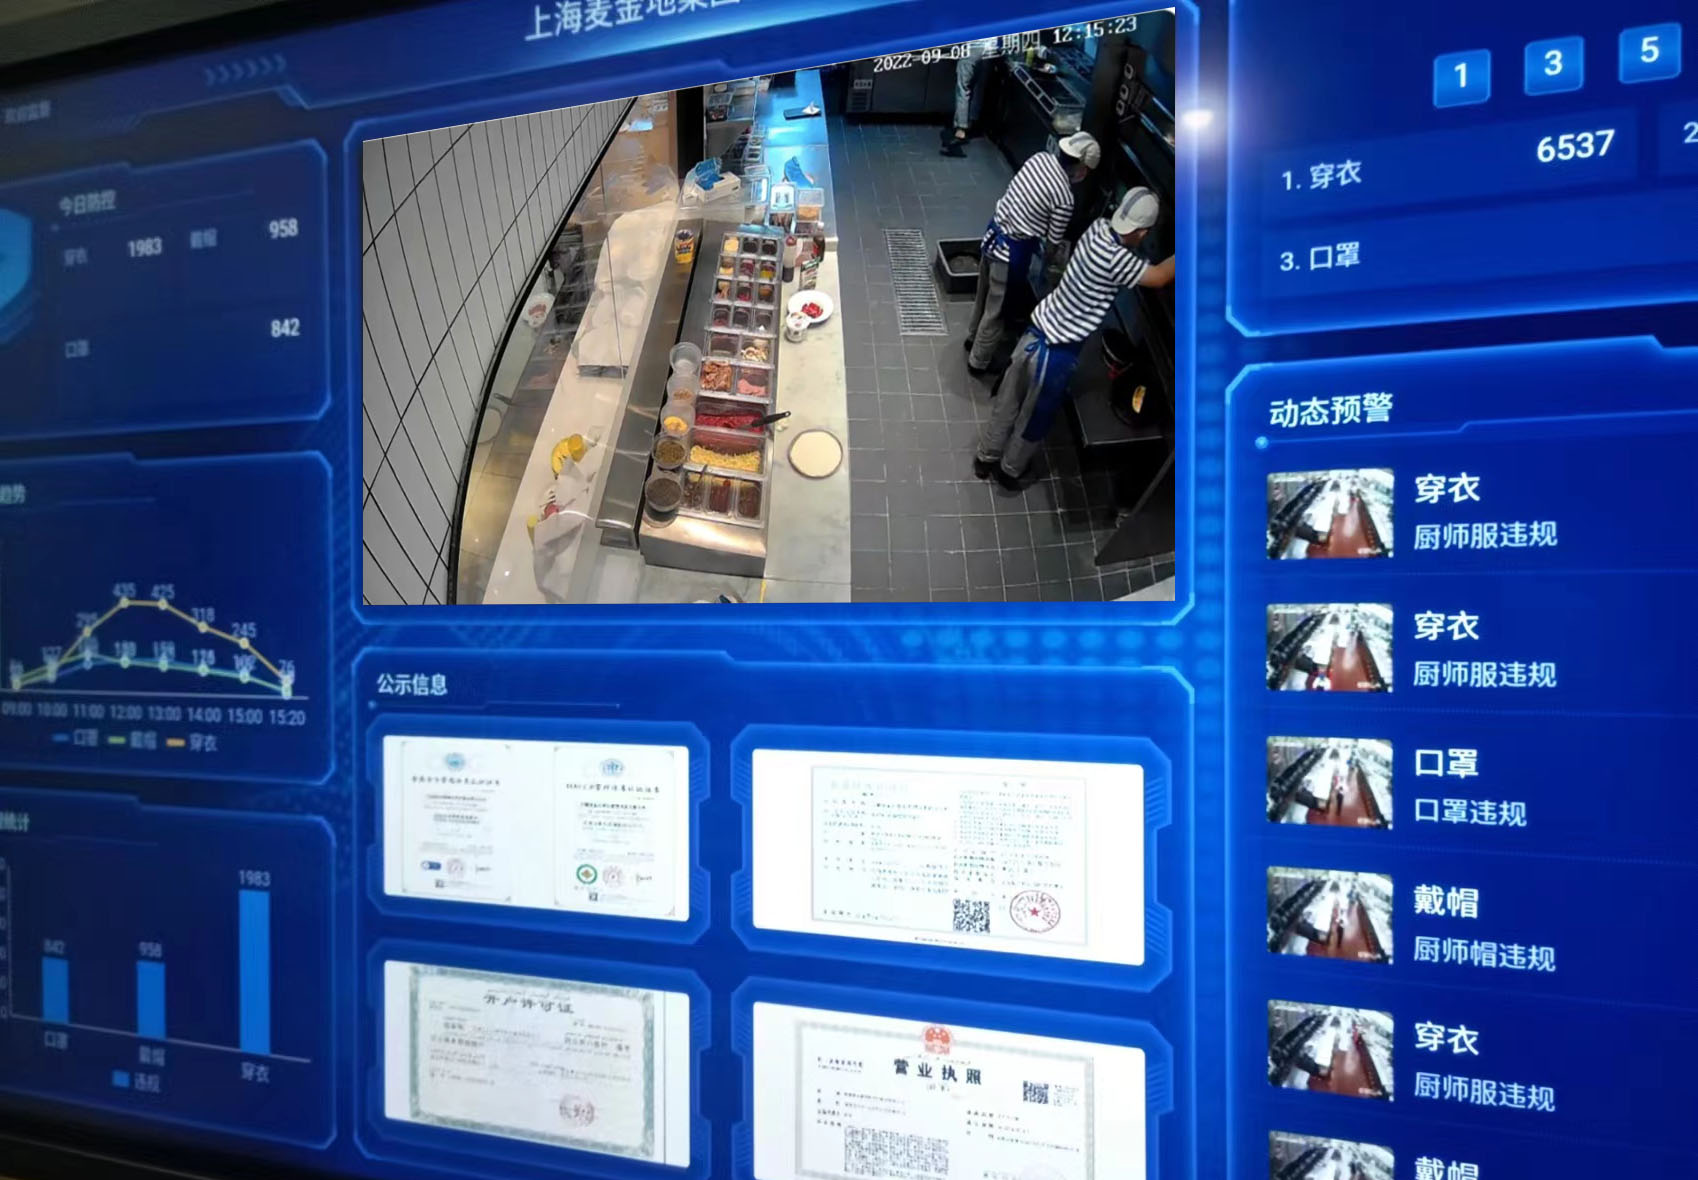 助力上海XX餐饮集团智能餐厅大数据溯源系统